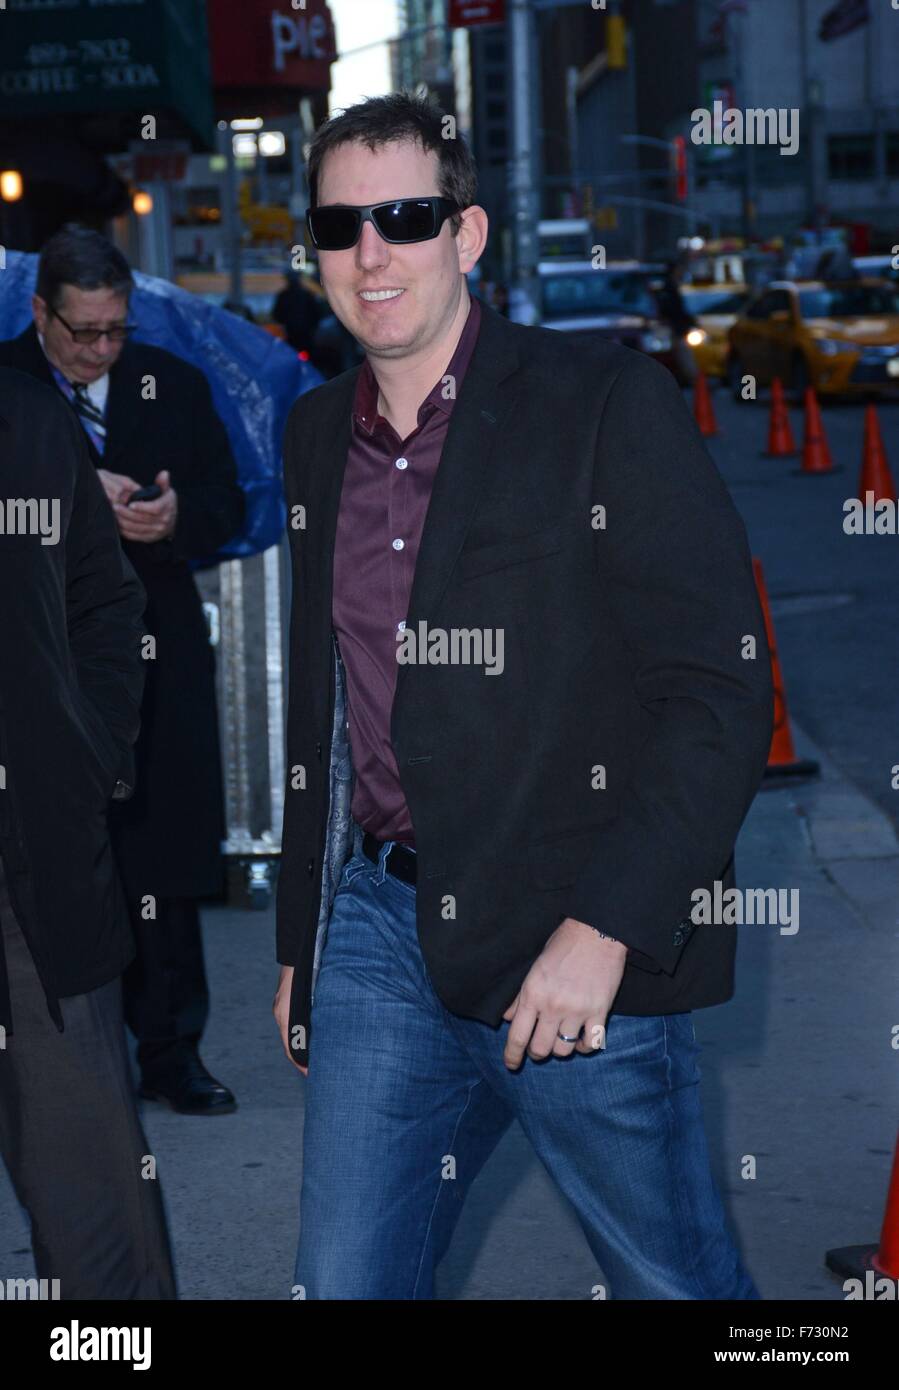 Kyle Busch fuori e circa per celebrità CANDIDS - MON, , New York, NY Novembre 23, 2015. Foto di: Derek Storm/Everett Collection Foto Stock